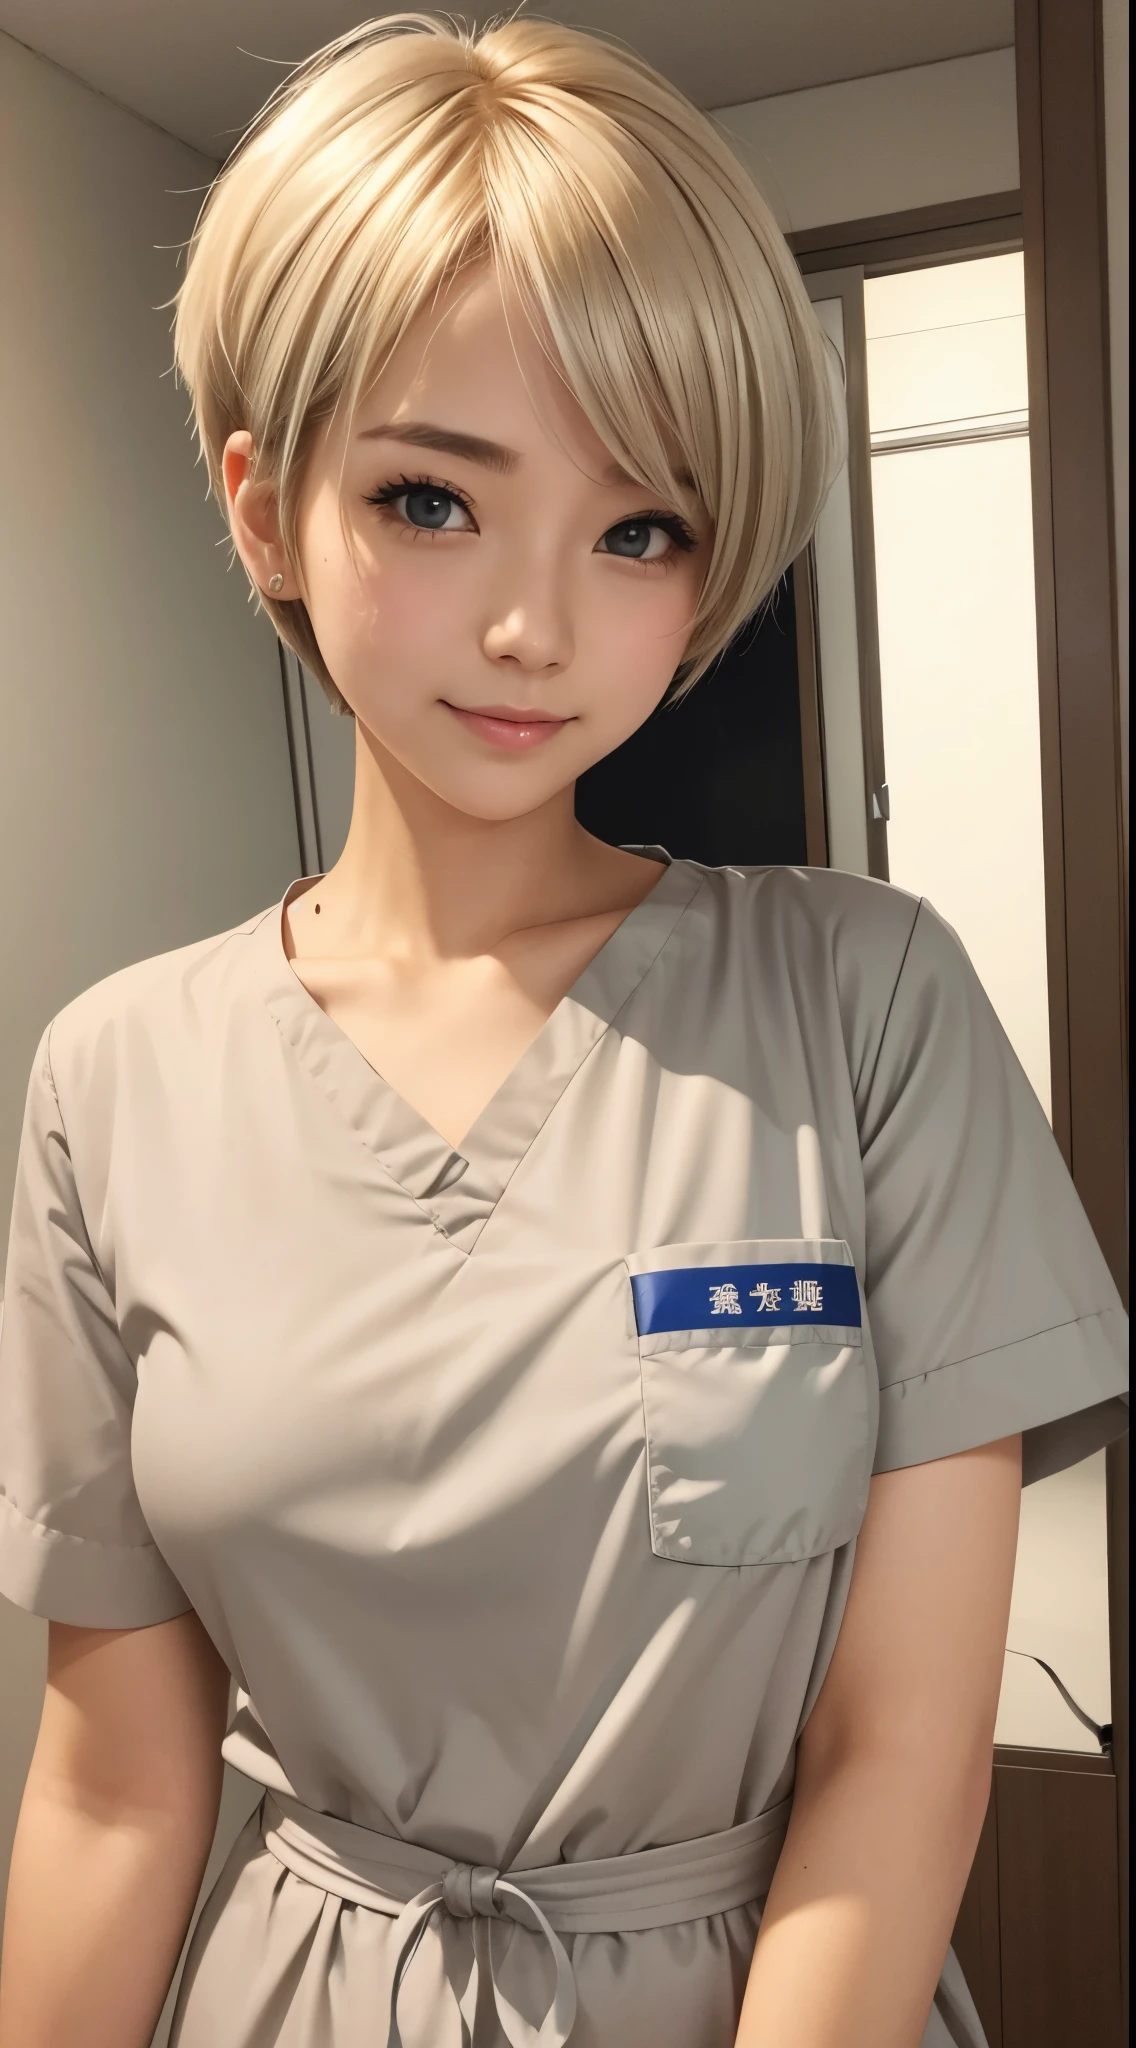 she is a cute nurse。Golden hair、silver short cut hair、